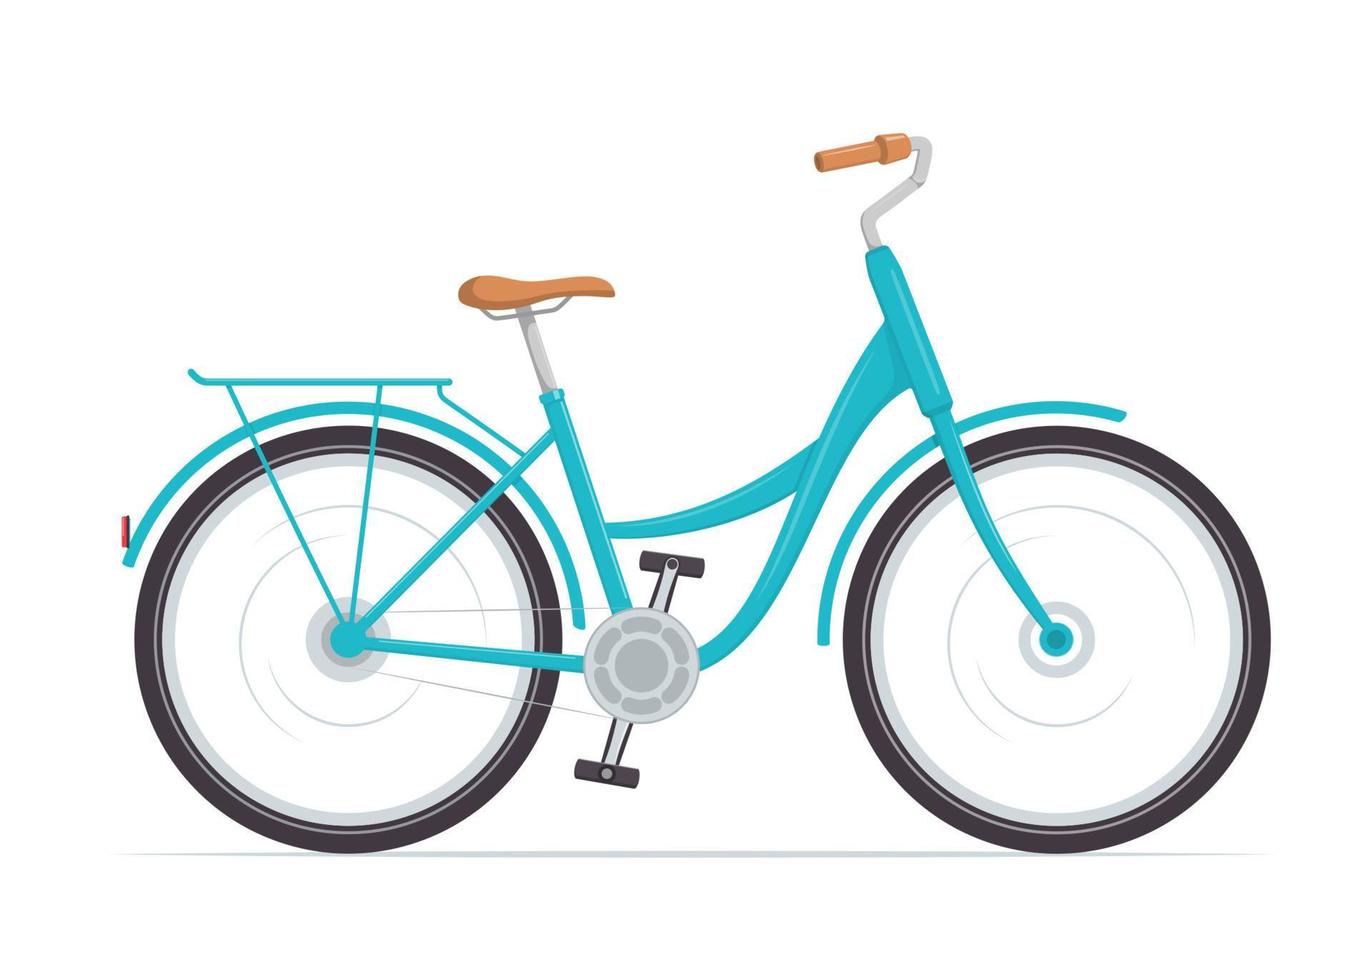 bonita bicicleta de mujer con cuadro bajo. bicicleta azul antigua. ilustración vectorial en estilo plano. vector